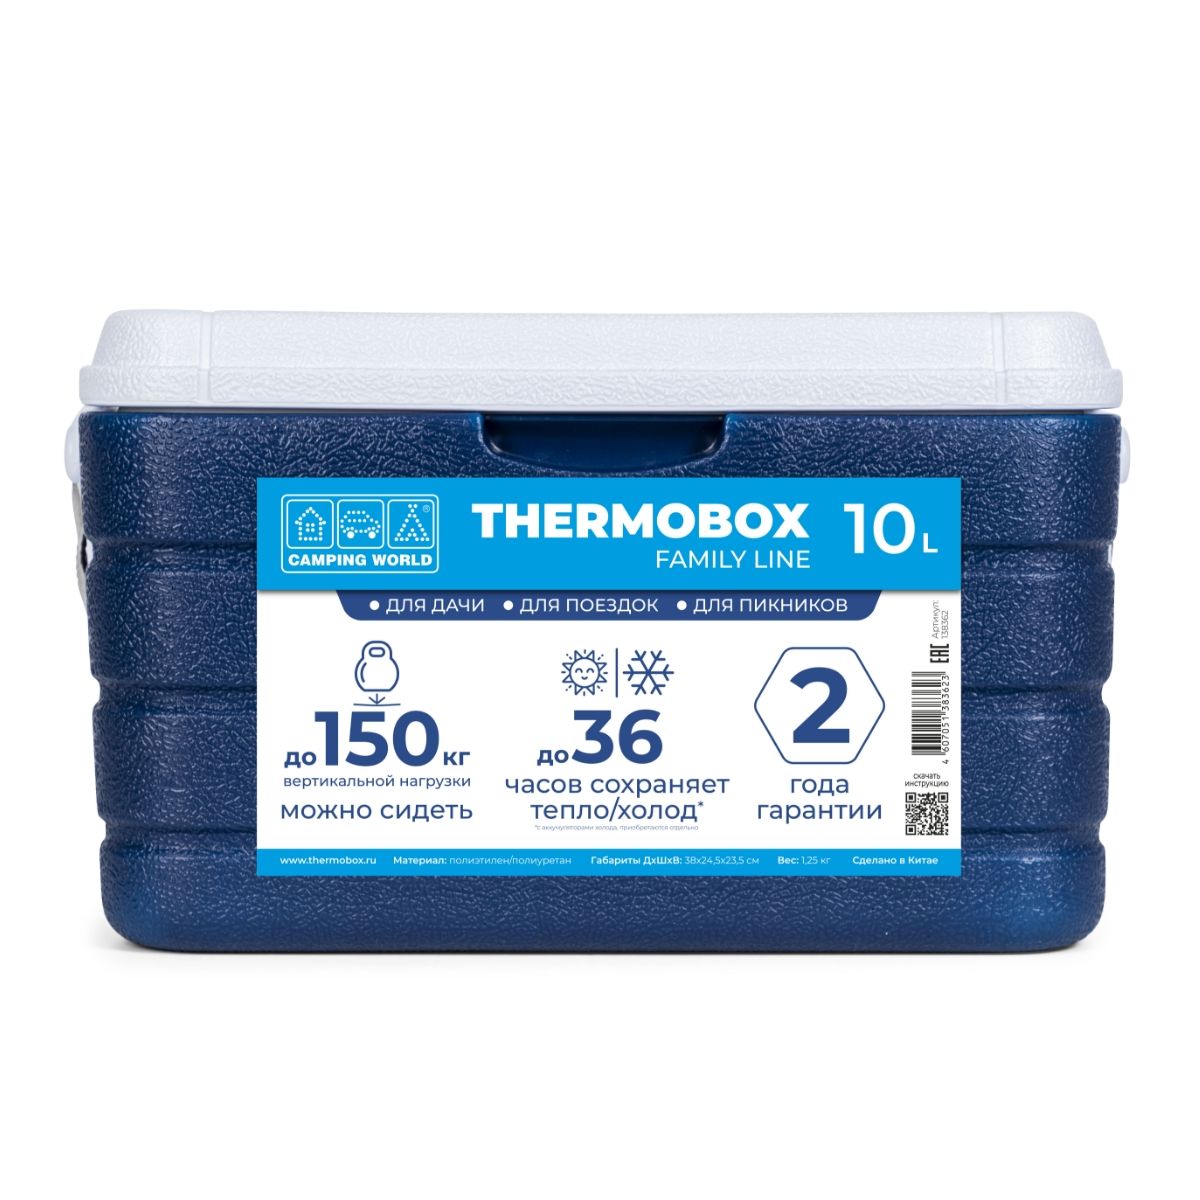 Контейнер изотермический Camping World Thermobox 10 литров, цвет: тёмно-синий